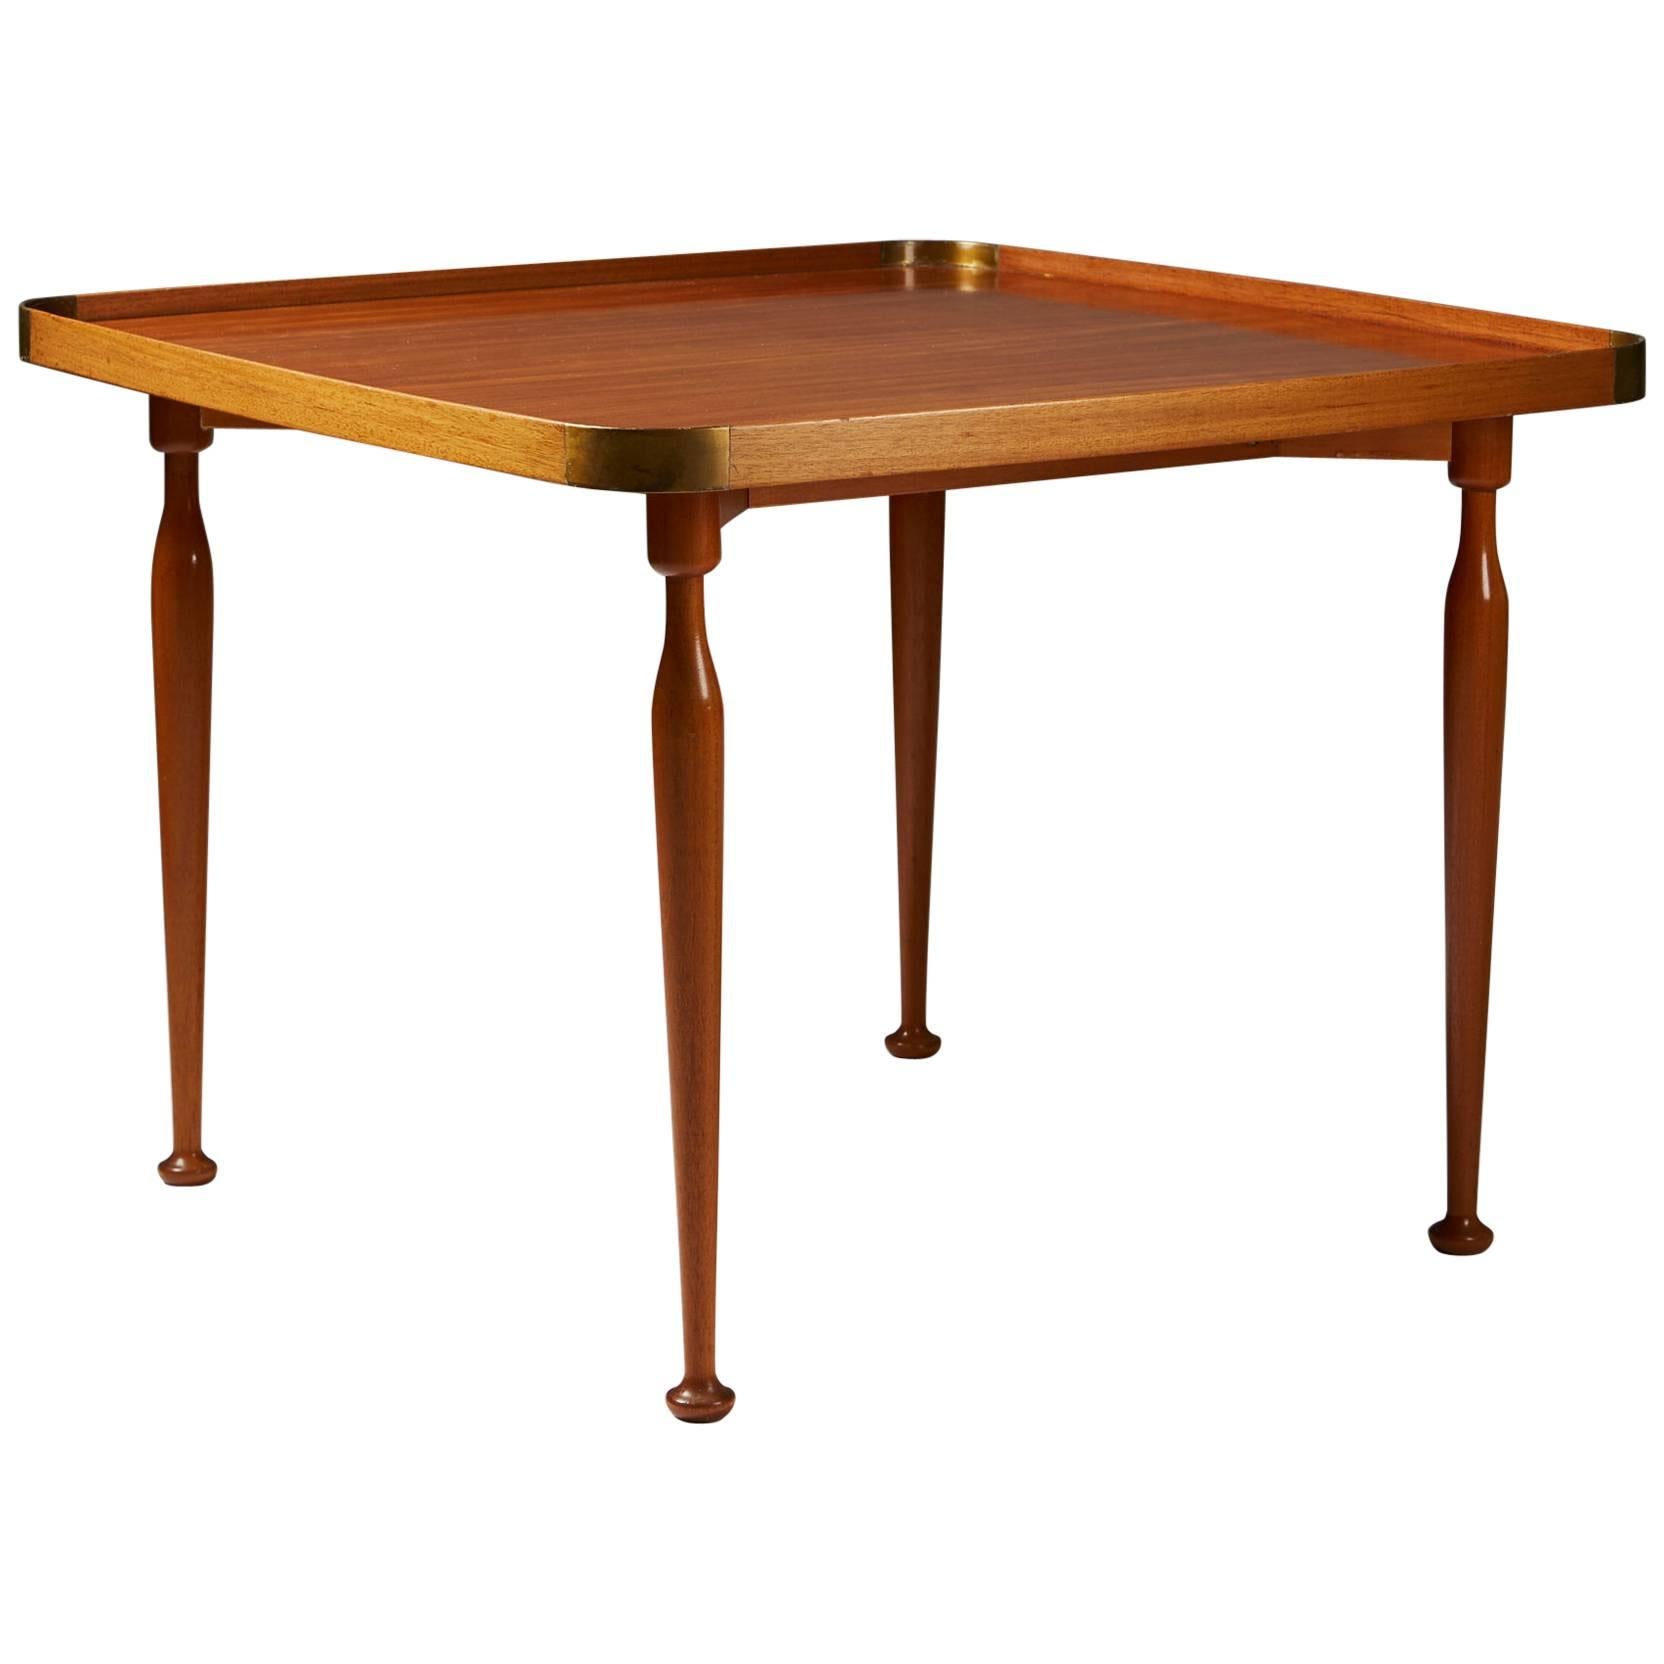 Occasional Table Model 1074 Designed by Josef Frank for Svenskt Tenn